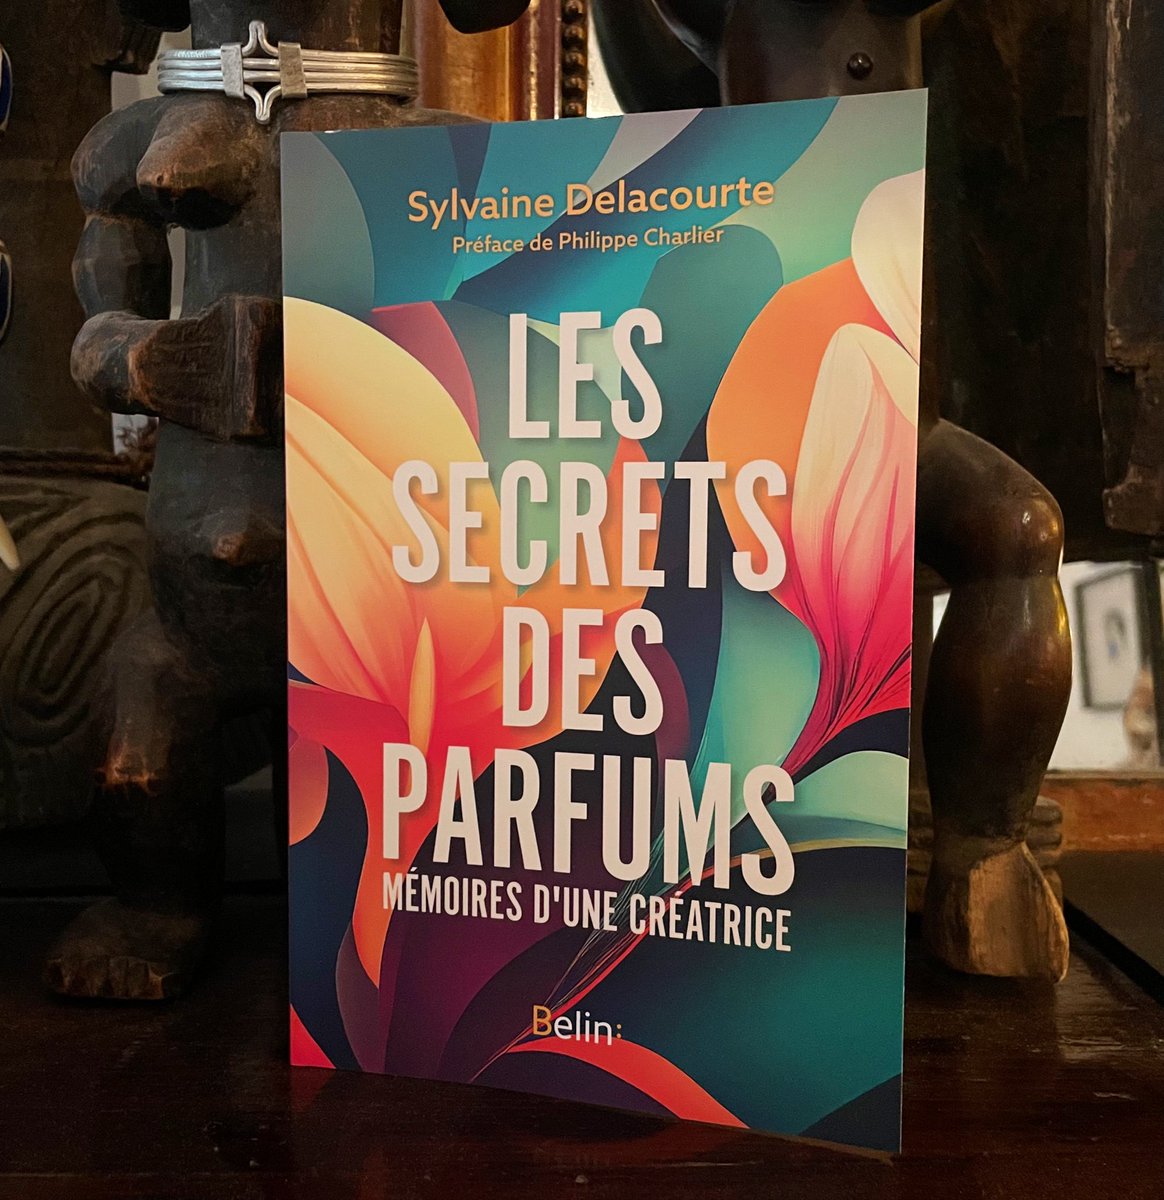 J’ai eu la chance d’éditer et préfacer cet excellent livre signé d’@espritdeparfum et @alliotdavid : un voyage très personnel et diablement inspirant dans le monde des odeurs et des parfums…